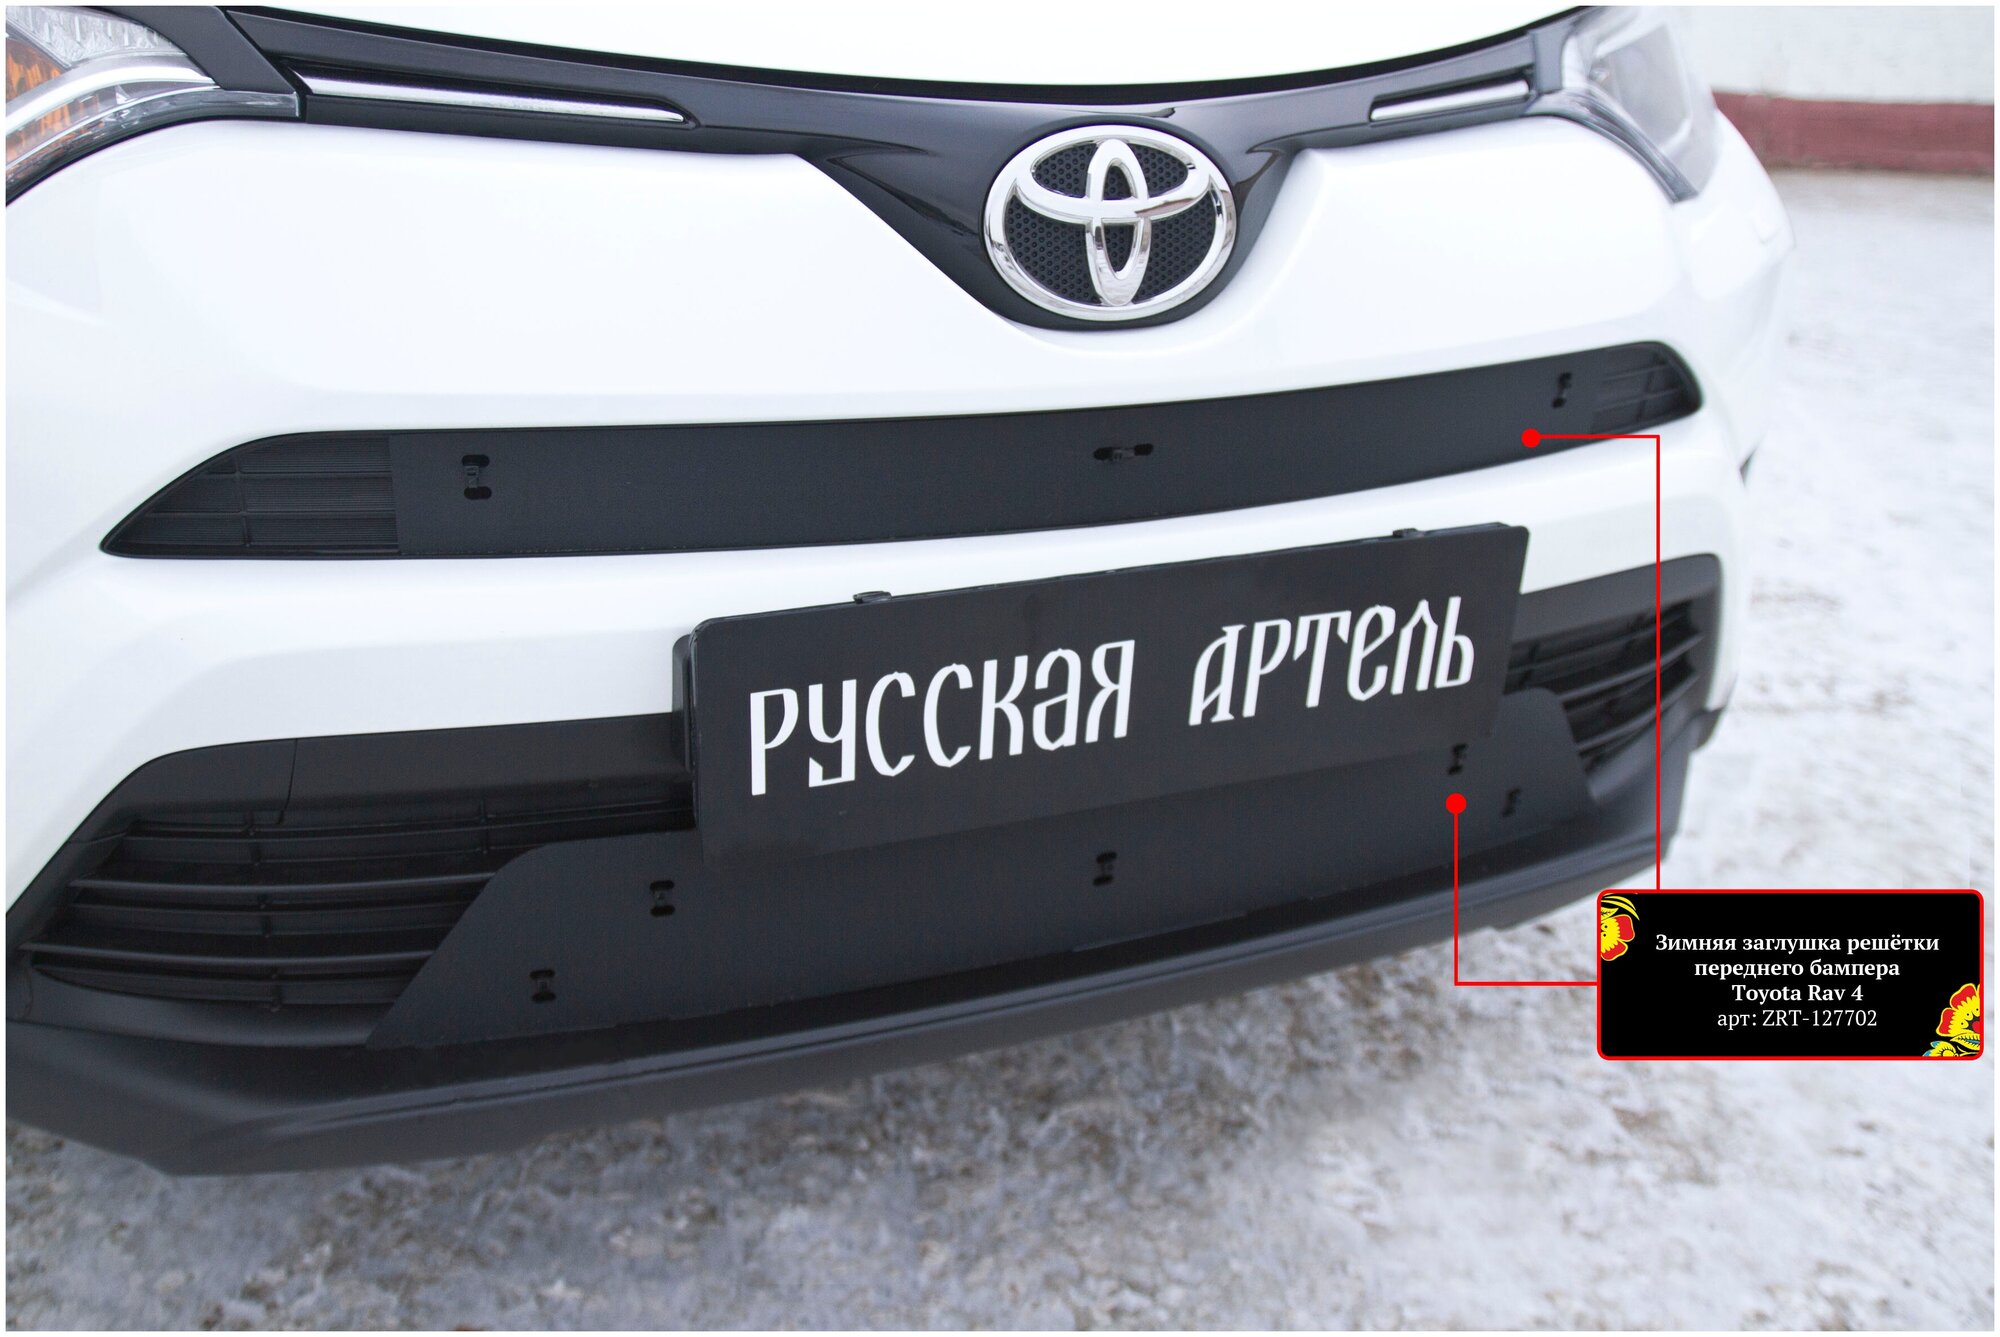 Зимняя заглушка решётки переднего бампера Toyota Rav4 2015-2019